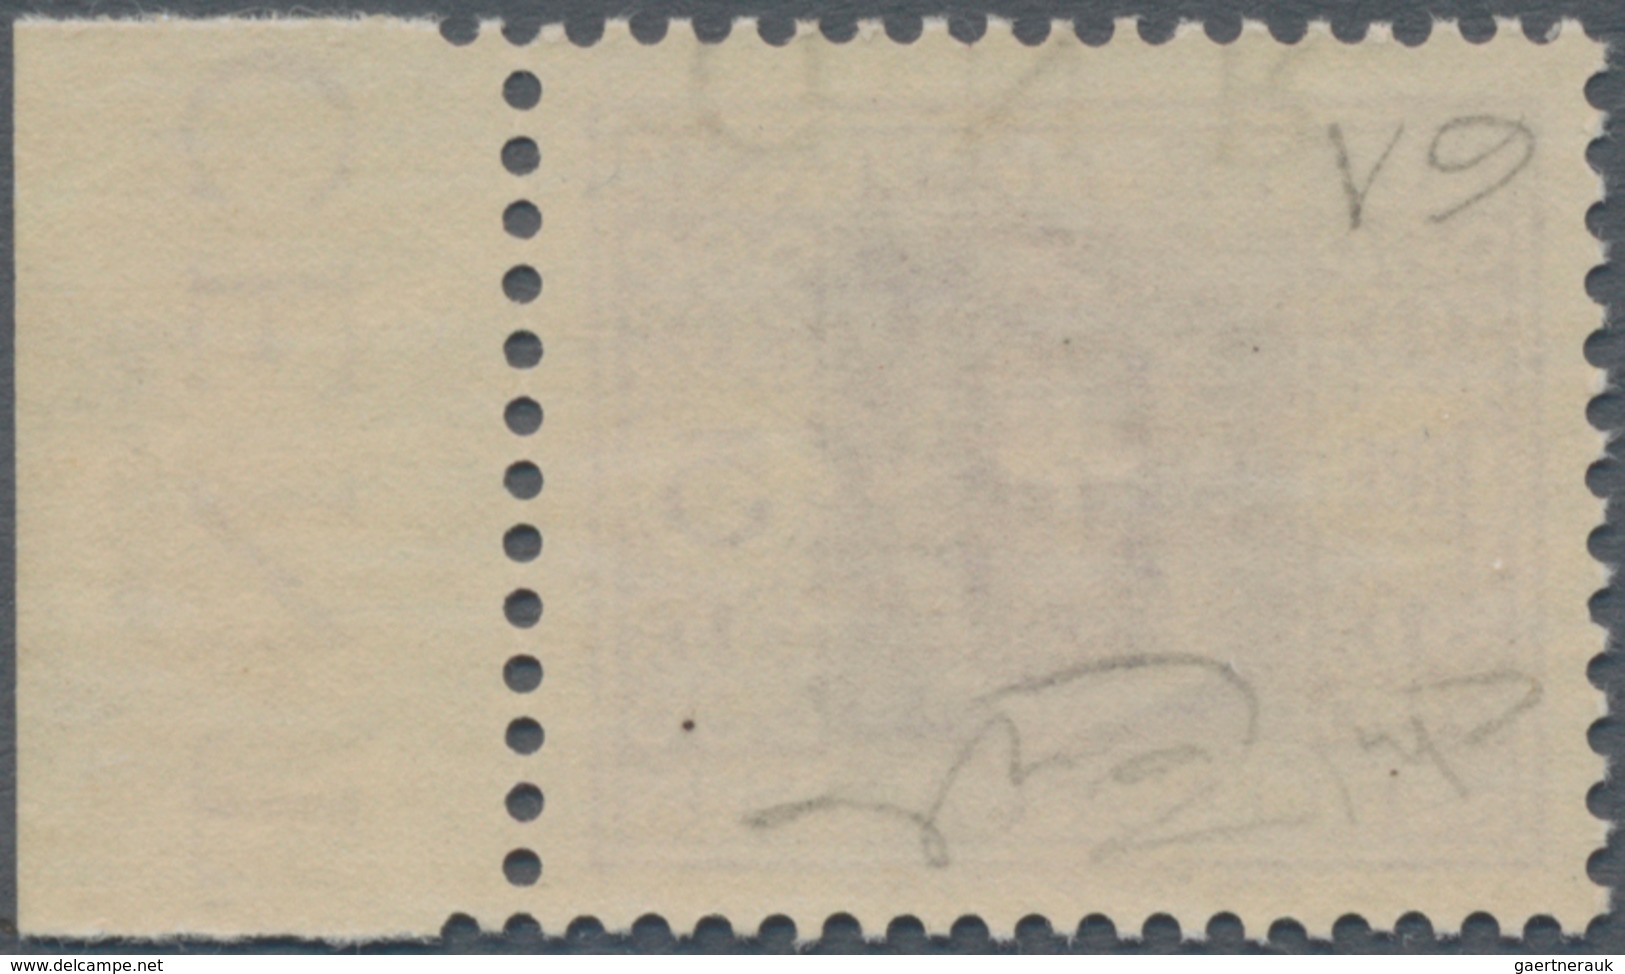 Italien - Militärpostmarken: Nationalgarde: 1943, 5 L Violet With Inverted Overprint "G.N.R." Was A - Andere & Zonder Classificatie